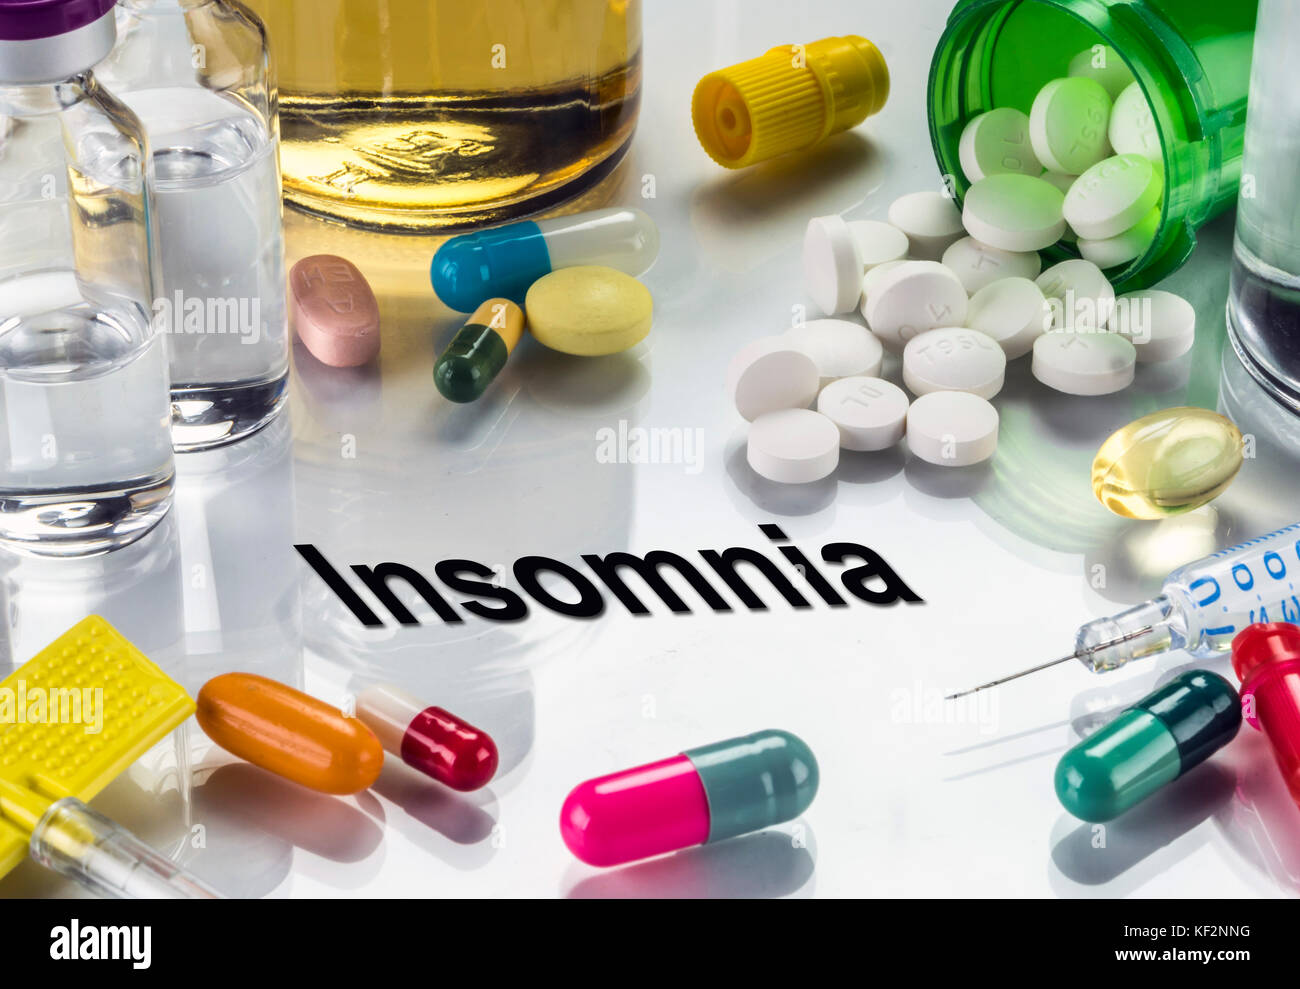 L'insonnia, medicinali come concetto di trattamento ordinario, immagine concettuale Foto Stock